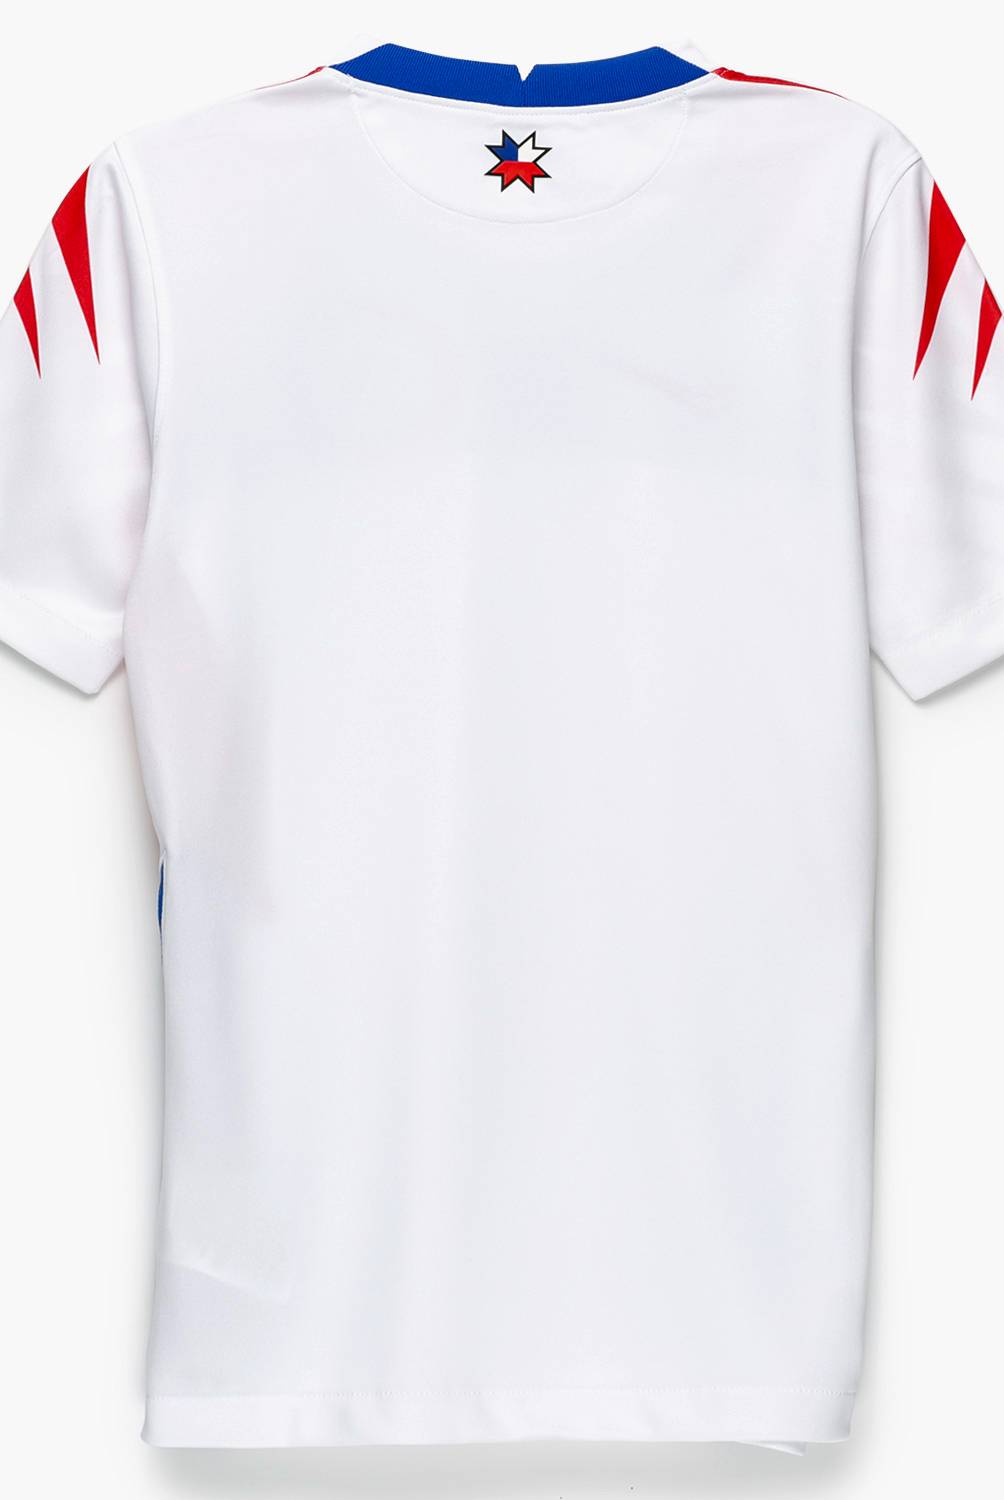 NIKE - Camiseta de Futból Selección Chilena Niño